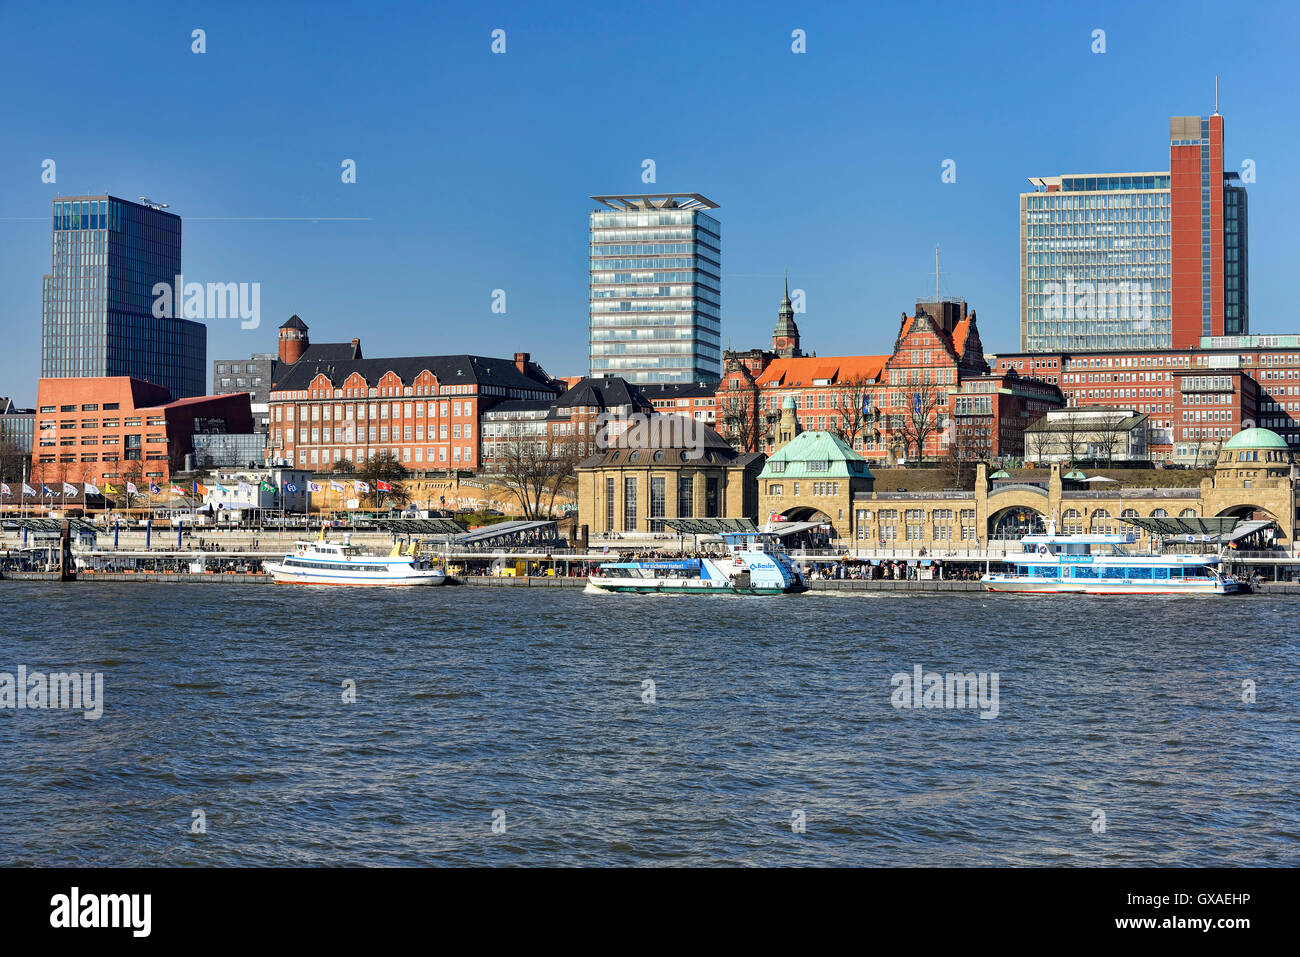 Hafenkrone und Landungsbruecken im Hamburger Hafen, Deutschland, Europa Foto Stock